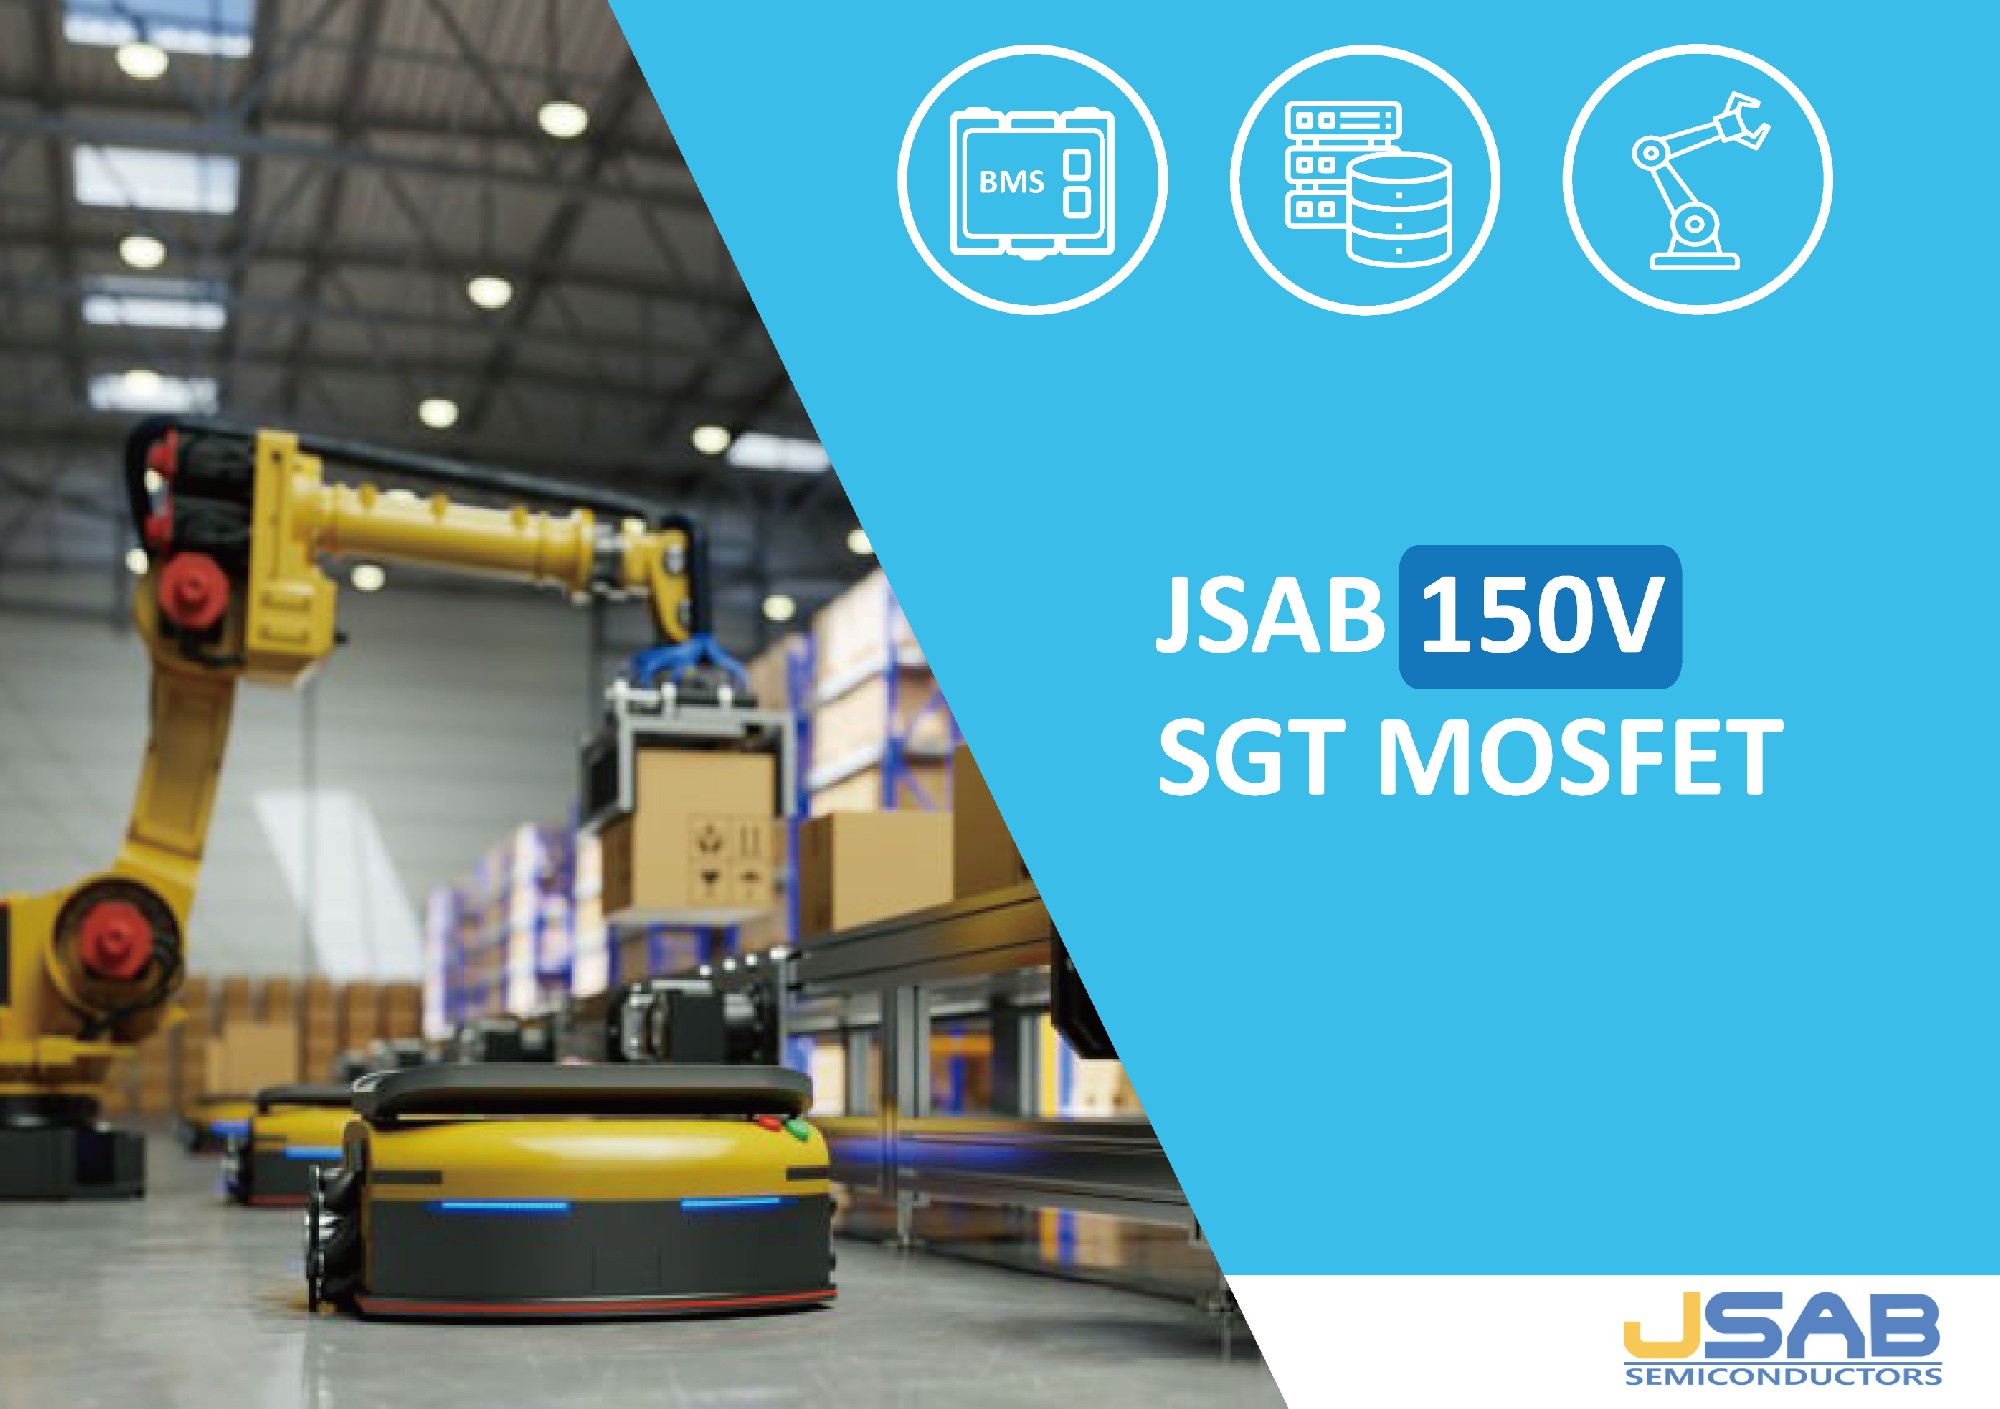 安建半导体推出全新的150V SGT MOSFET产品平台